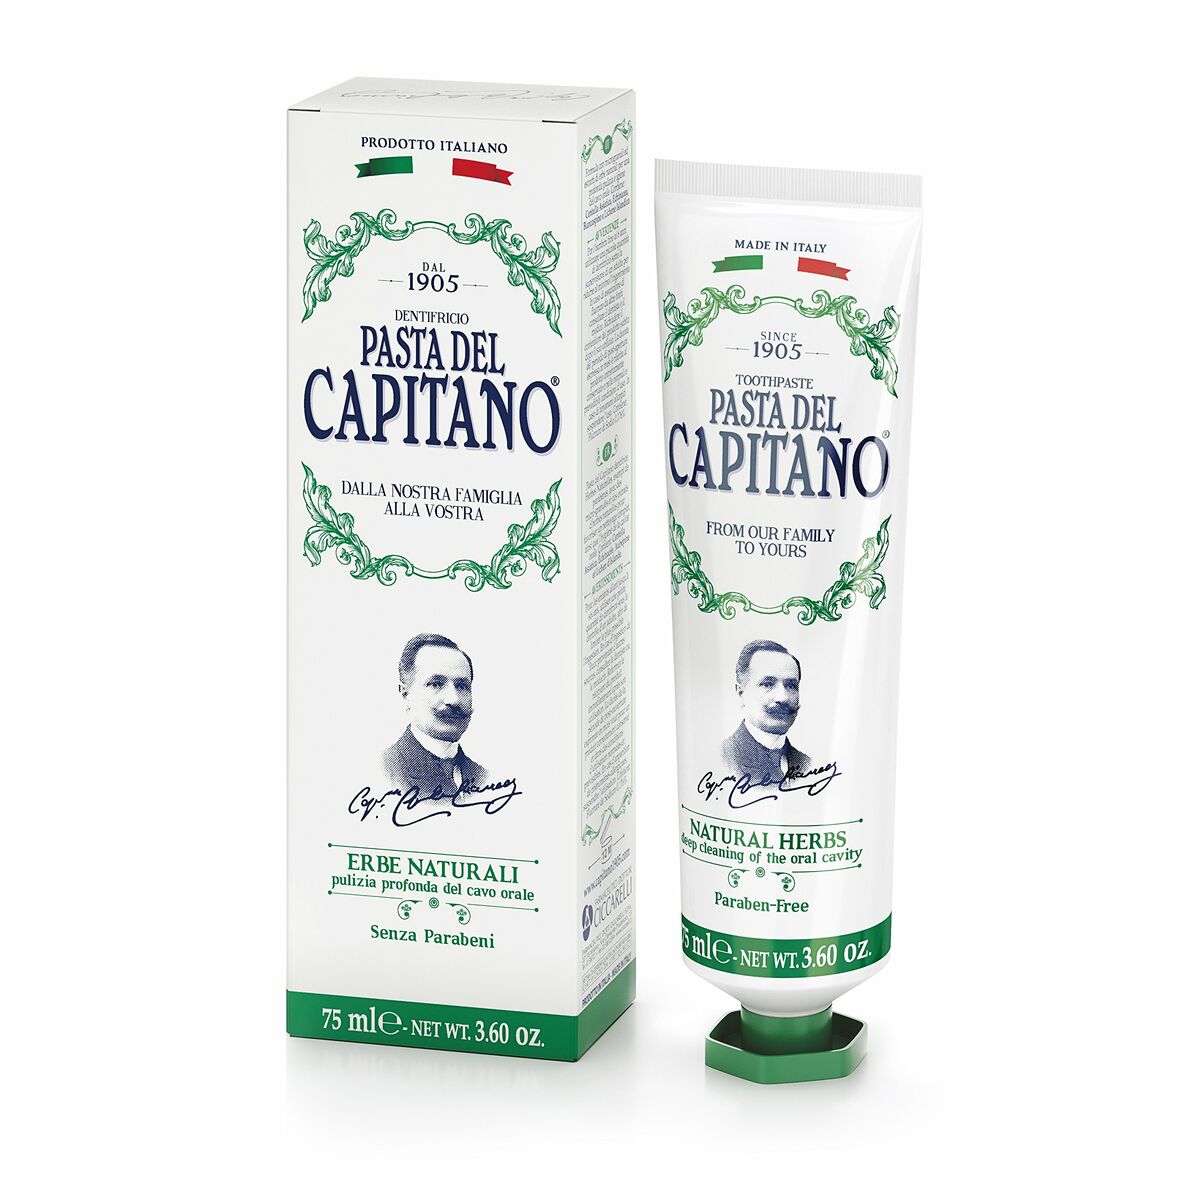 Dentifrice Pasta Del Capitano Natural Herbs (75 ml)